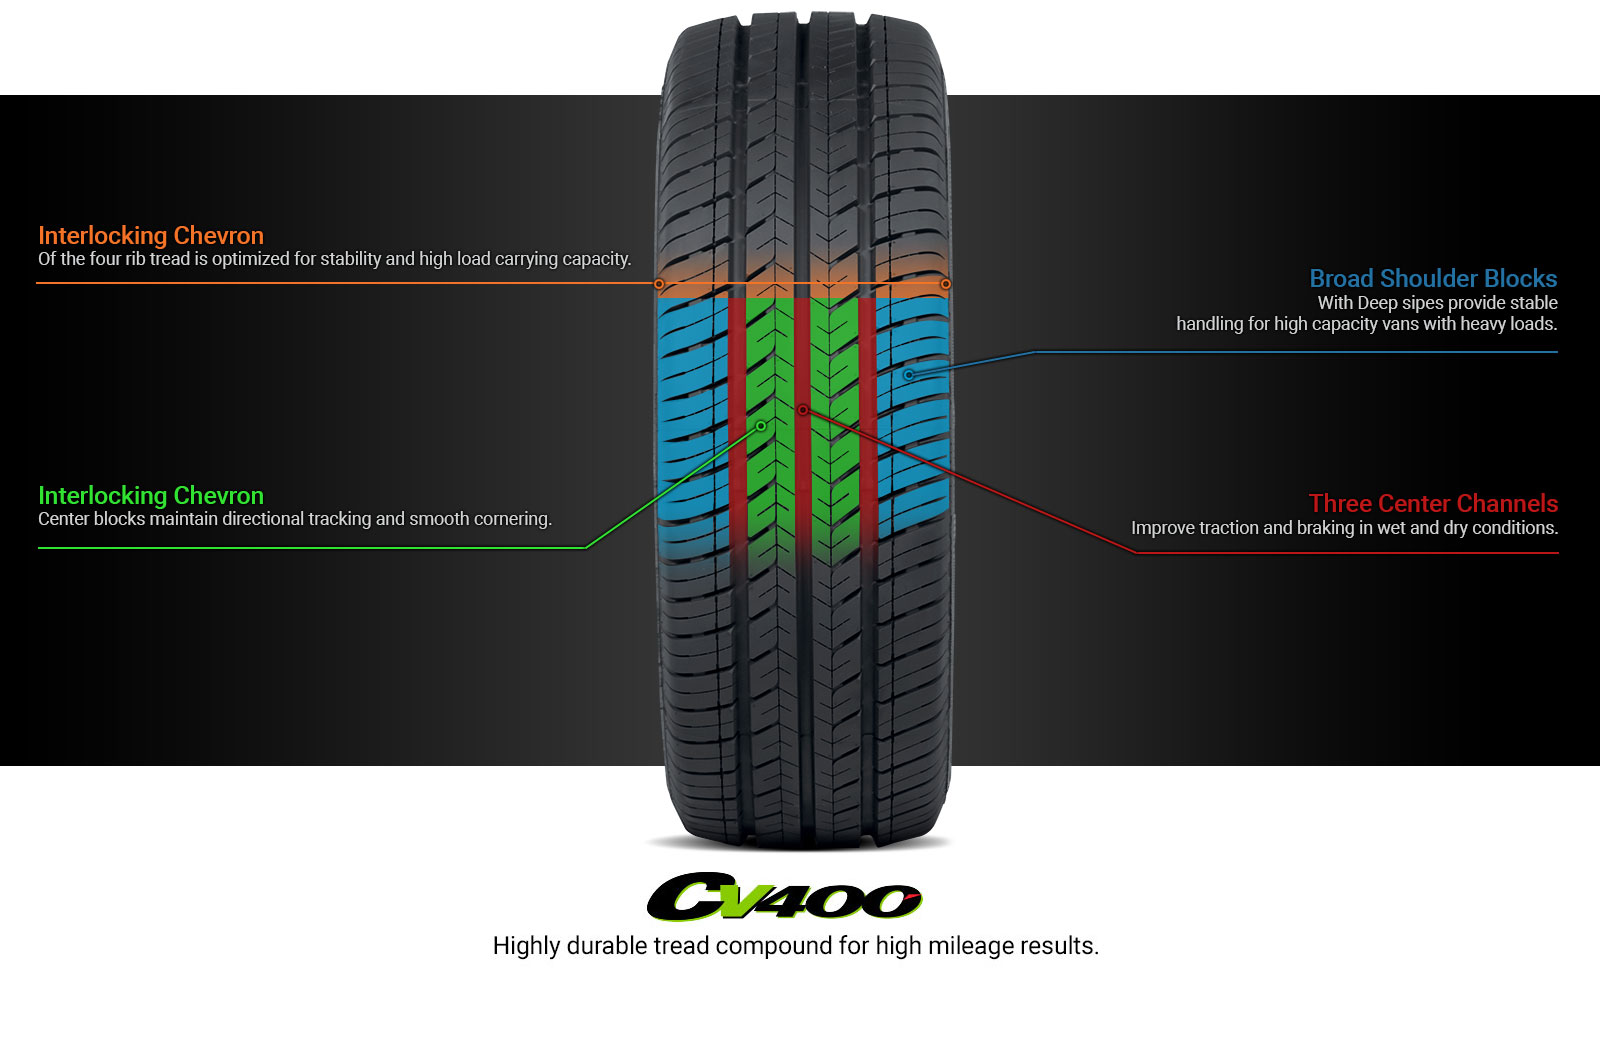 CV400 Tire Technology